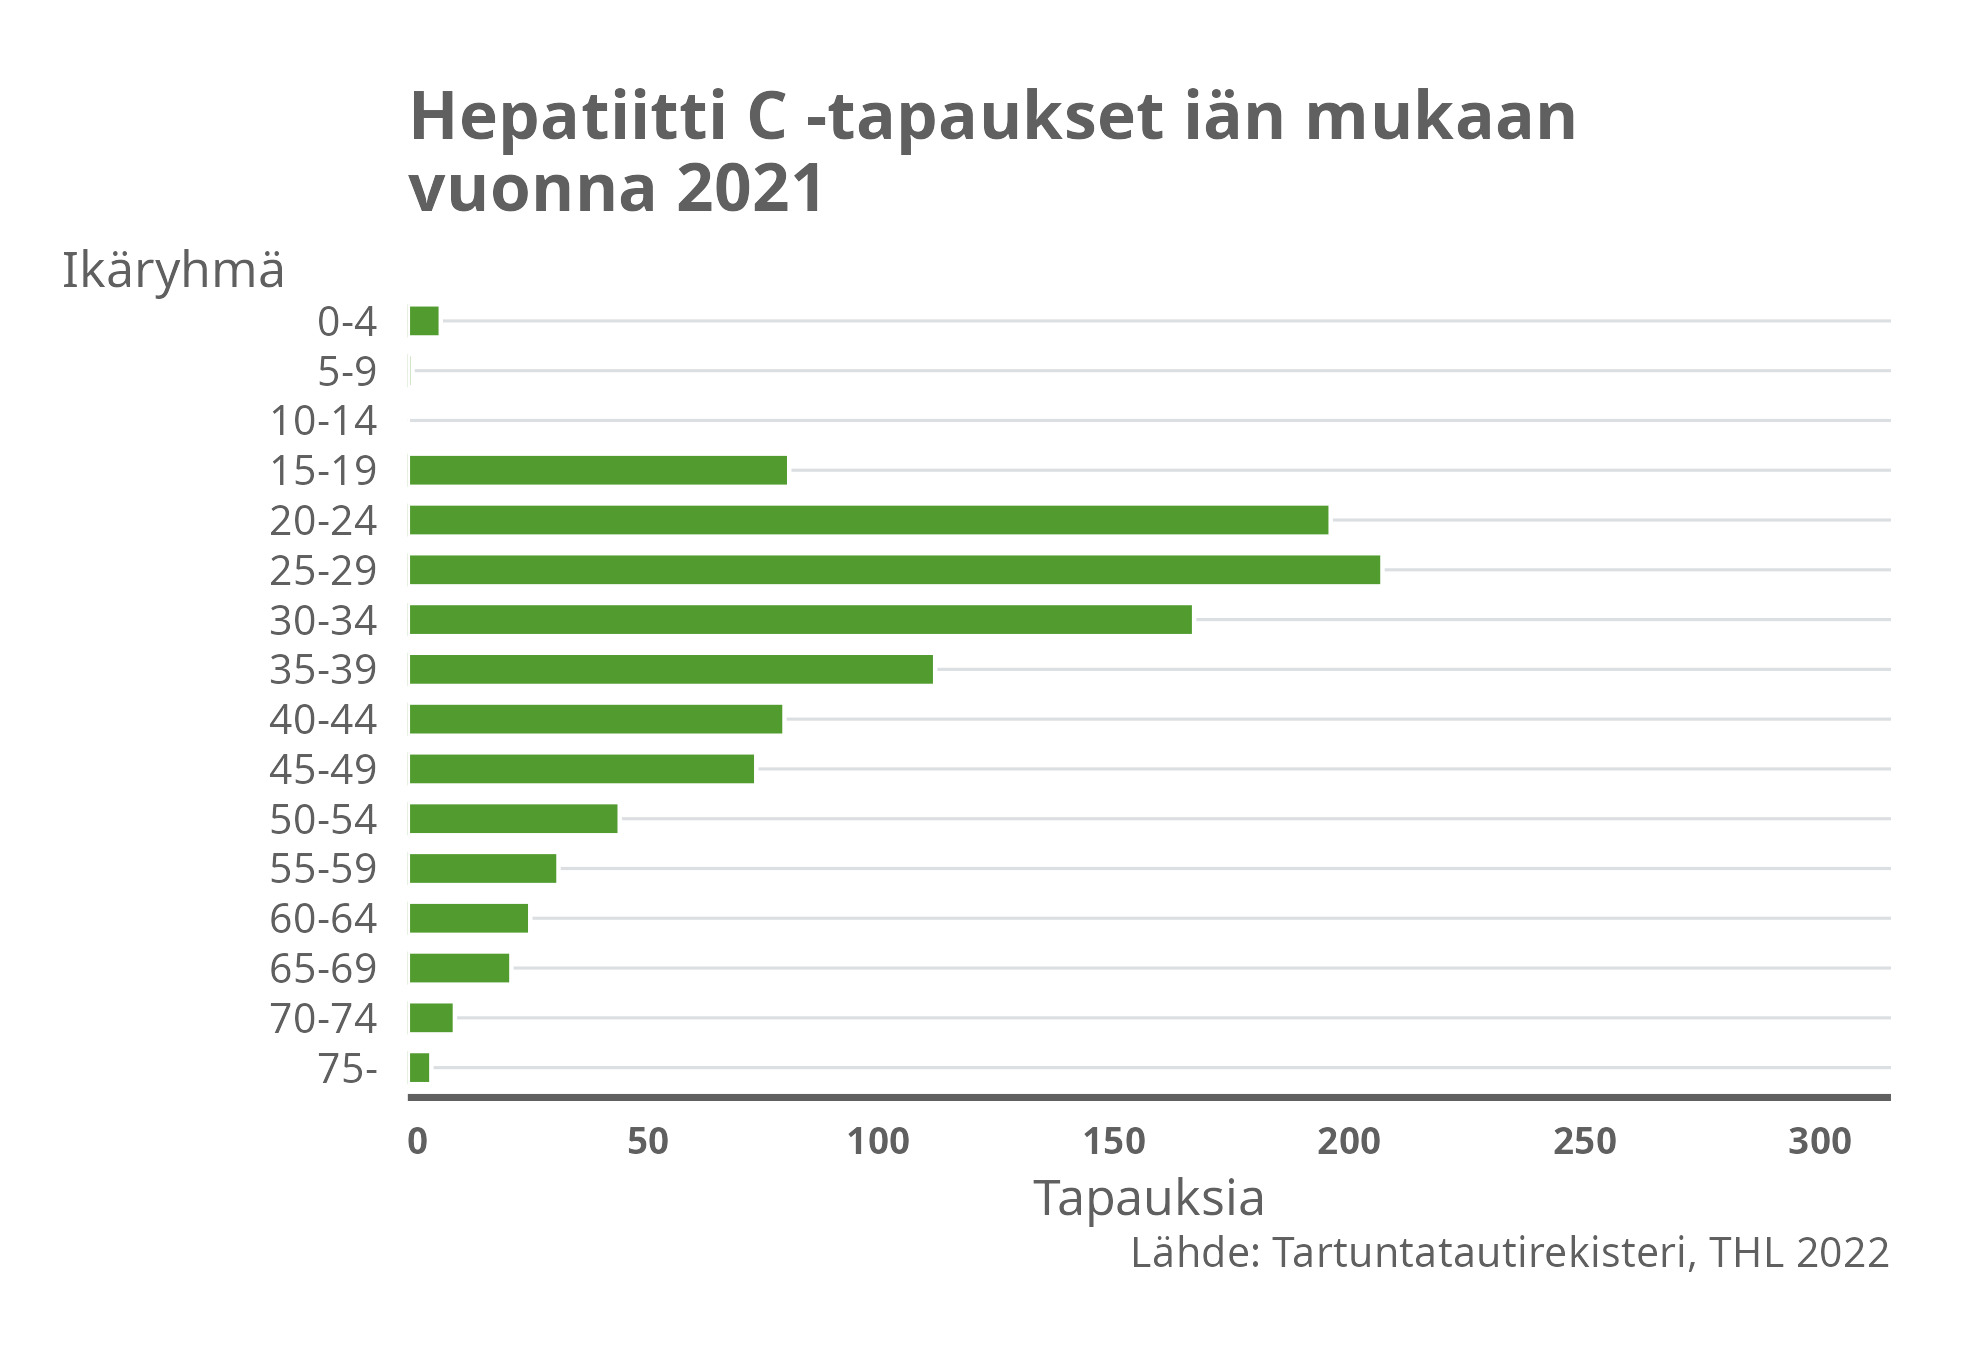 Hepatiitti C-tapaukset iän mukaan vuonna 2021.